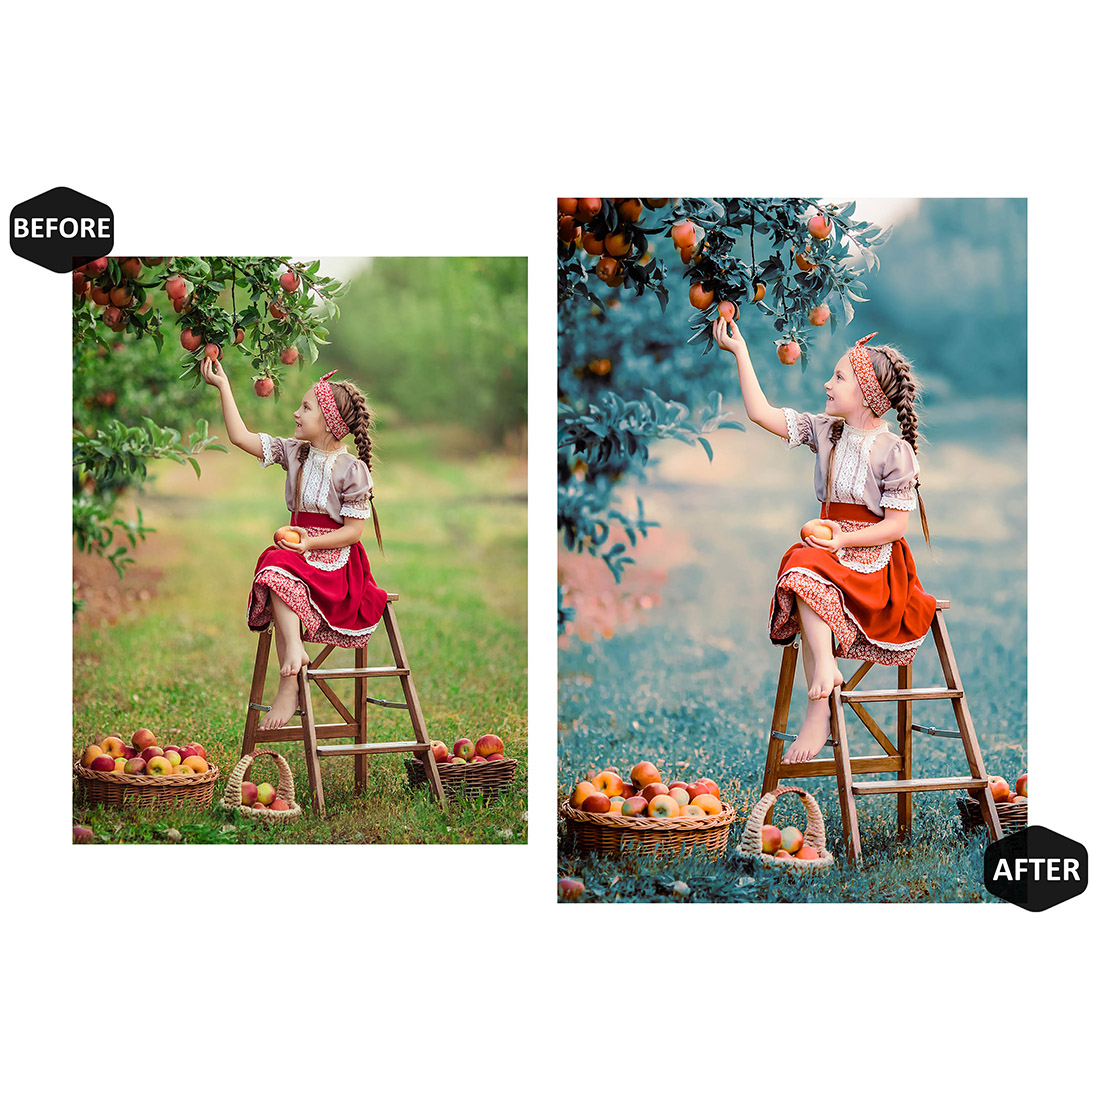 12 Earth Angels Lightroom Presets, Cute Kids Preset, Summer Child Desktop LR Filter DNG Lifestyle Theme For Blogger Portrait Instagram preview image.